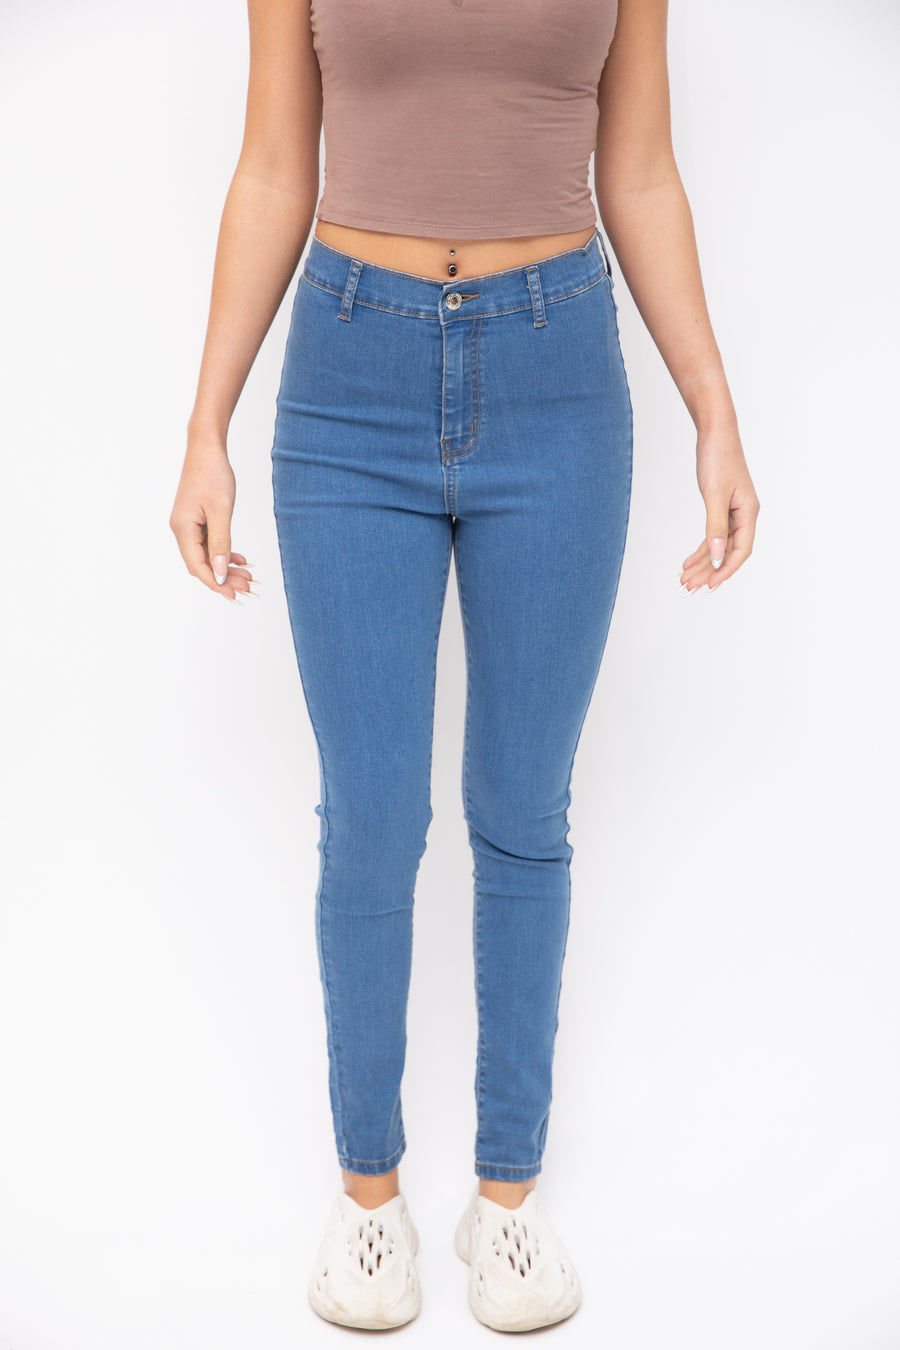 Just Organic Jessi Jeans - Mid Blue